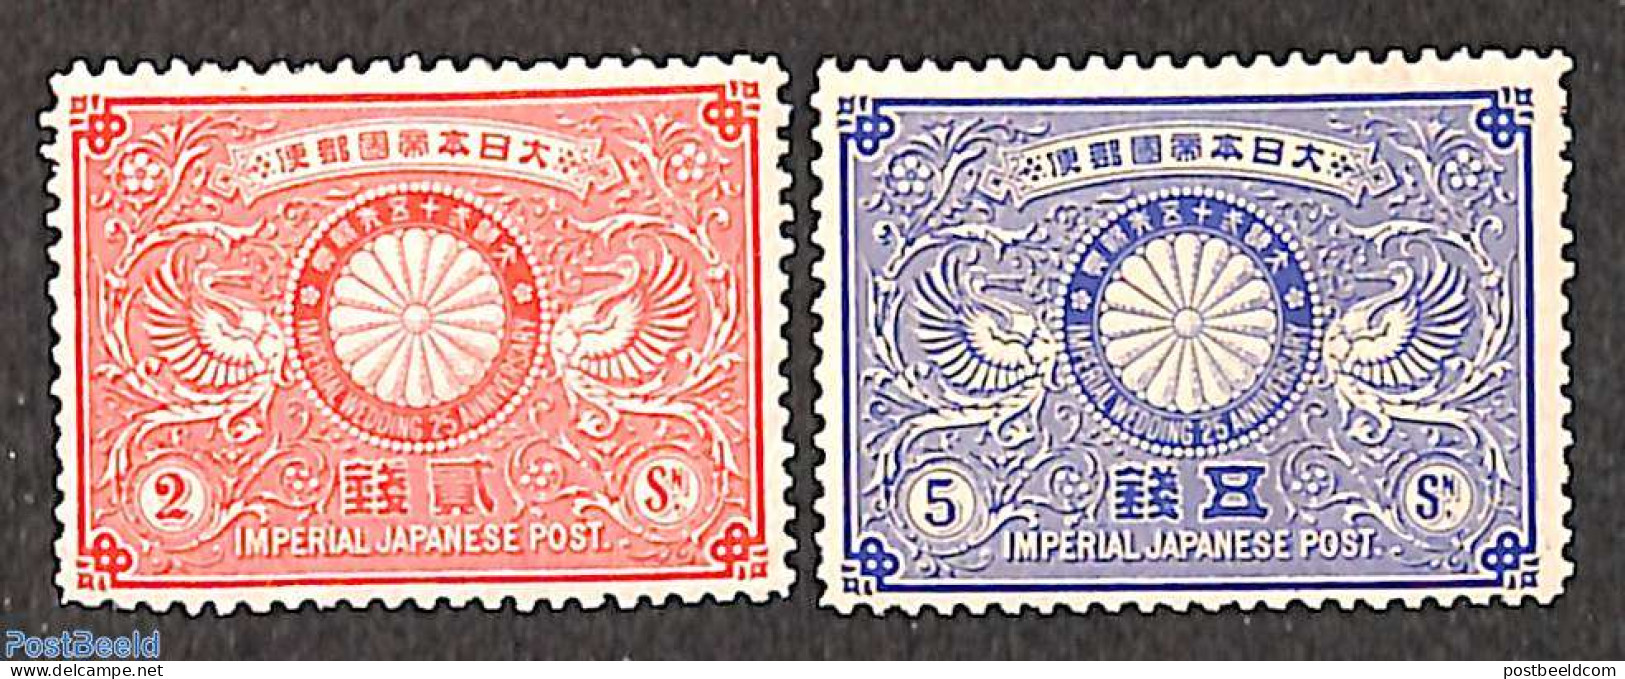 Japan 1894 Silver Wedding 2v, Unused (hinged), History - Kings & Queens (Royalty) - Neufs